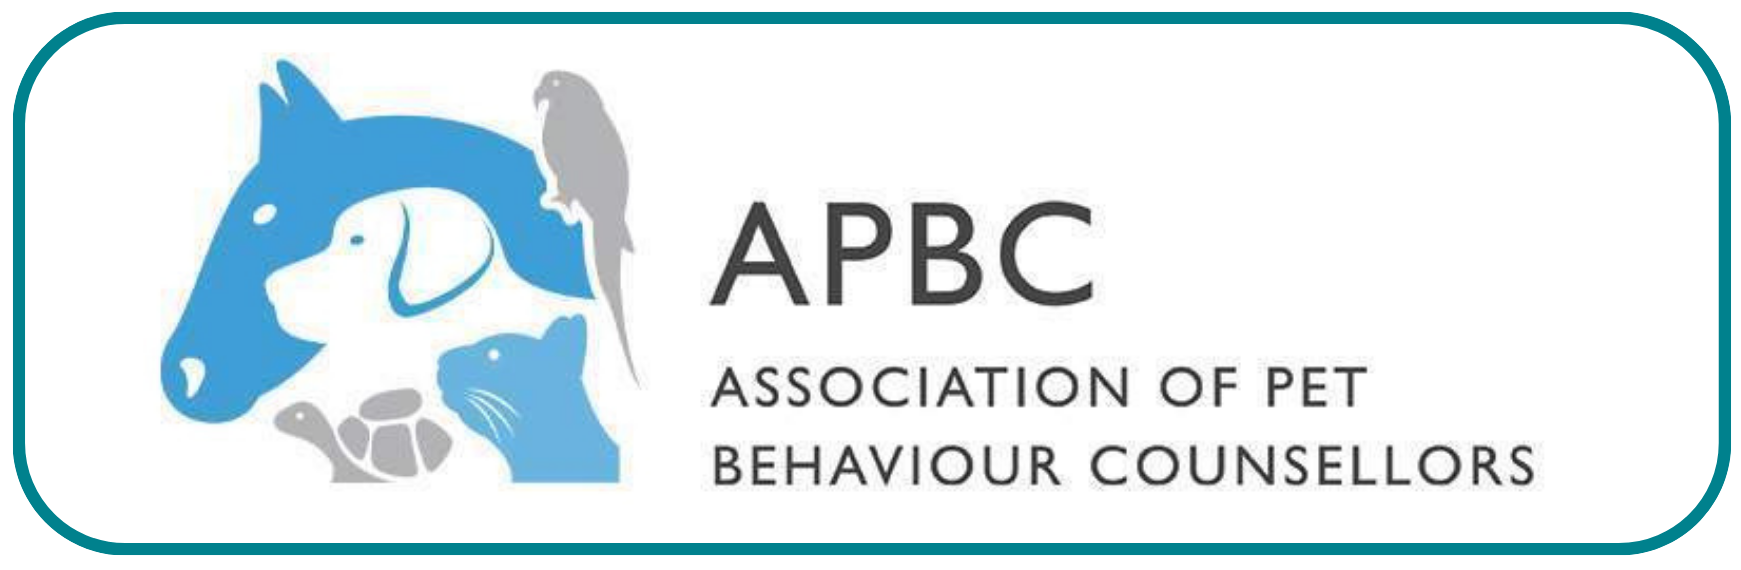 Clinical animal behaviourist (CAB) Member of APBC - Association of Pet Behaviour Counsellors